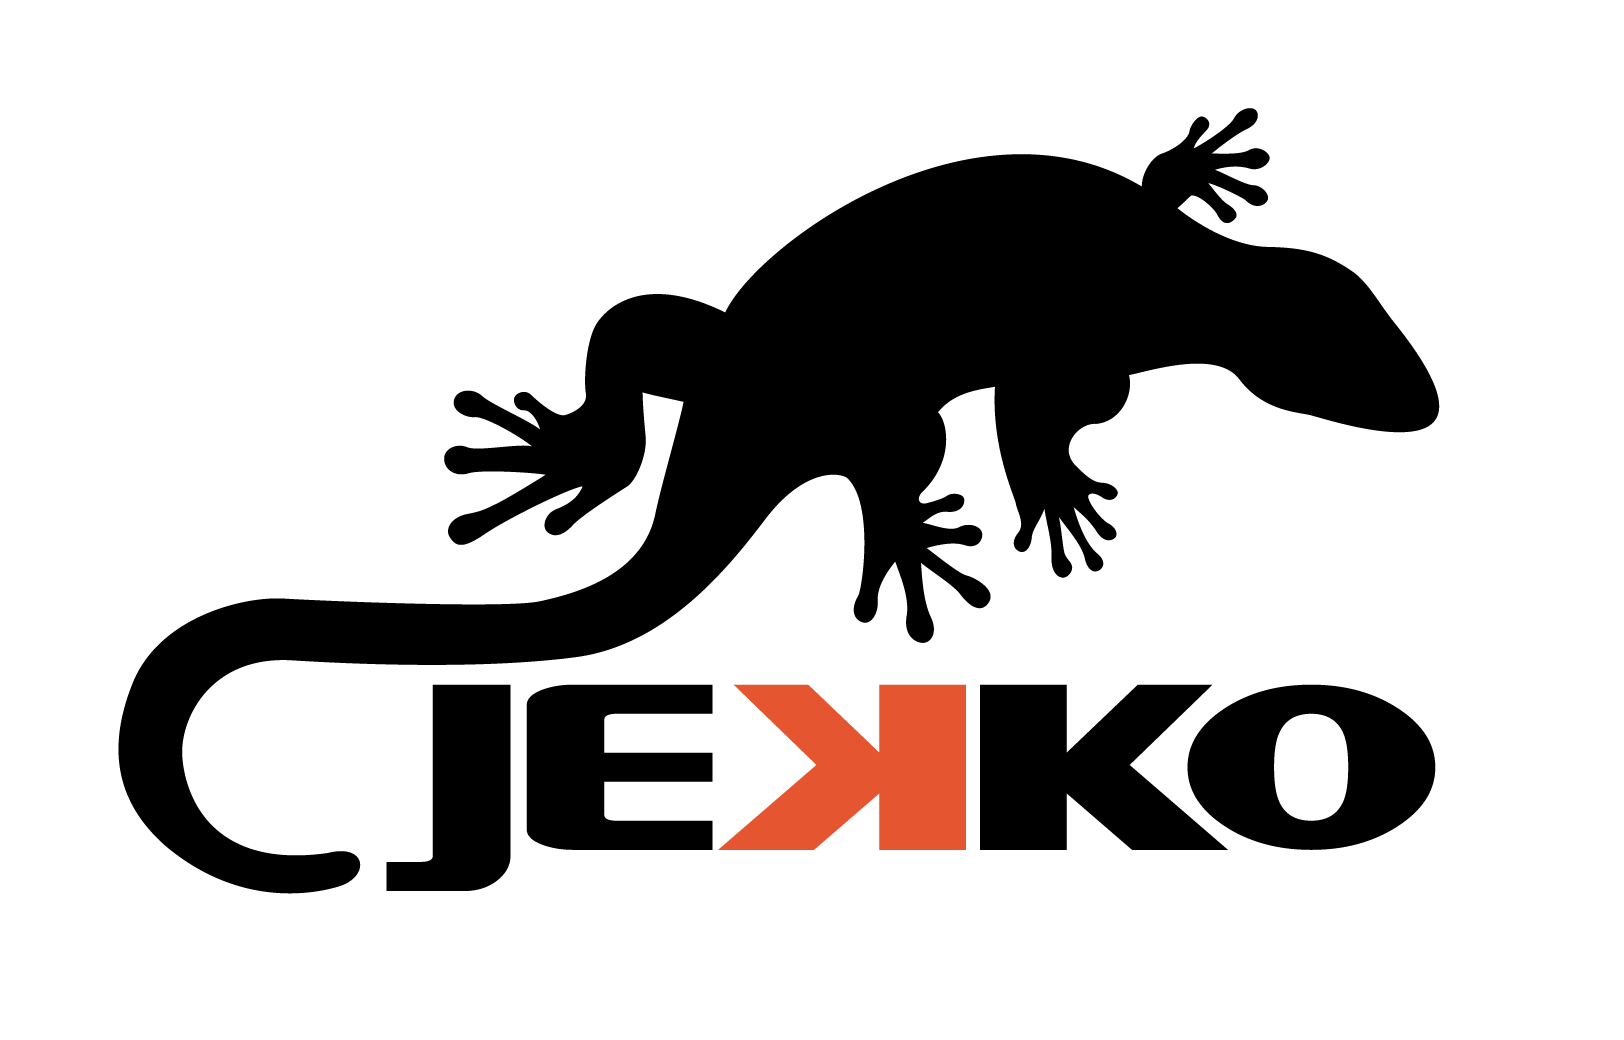 Jekko